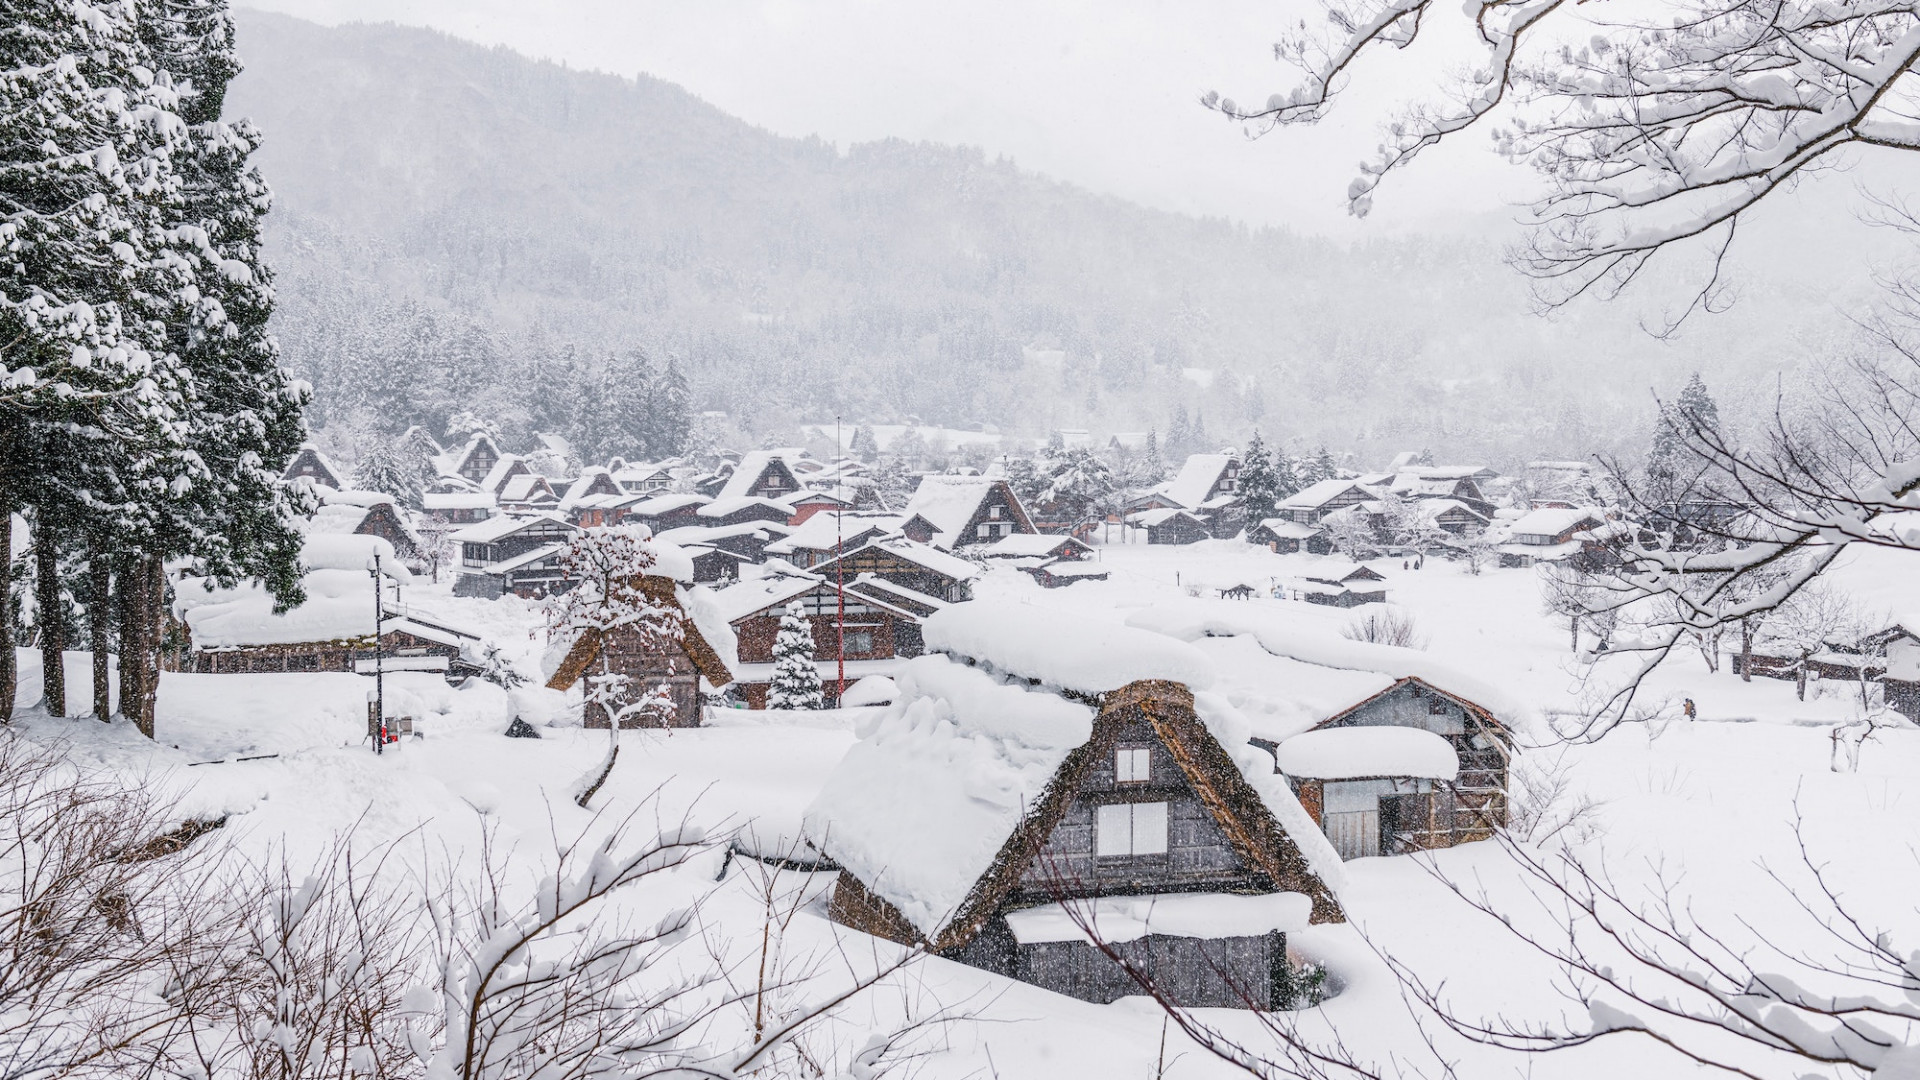 Hida Furukawa and Shirakawa-go: A Magical Winter Scene